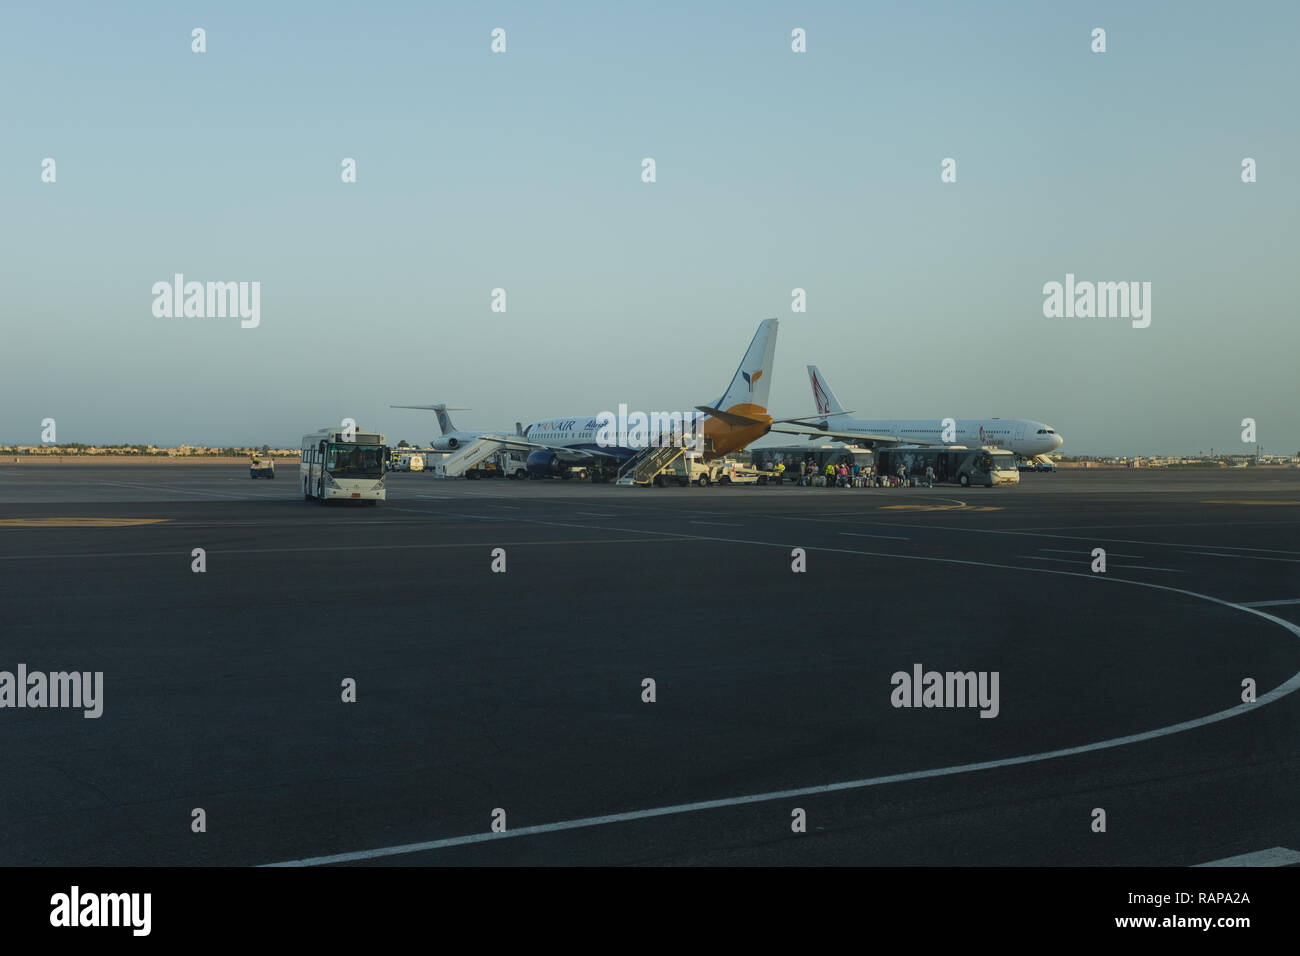 SHARM EL SHEIKH, ÄGYPTEN - 21. MAI 2018: Blick auf Flugzeuge aus dem Fenster des Terminals der Ägyptischen Flughafen. Stockfoto